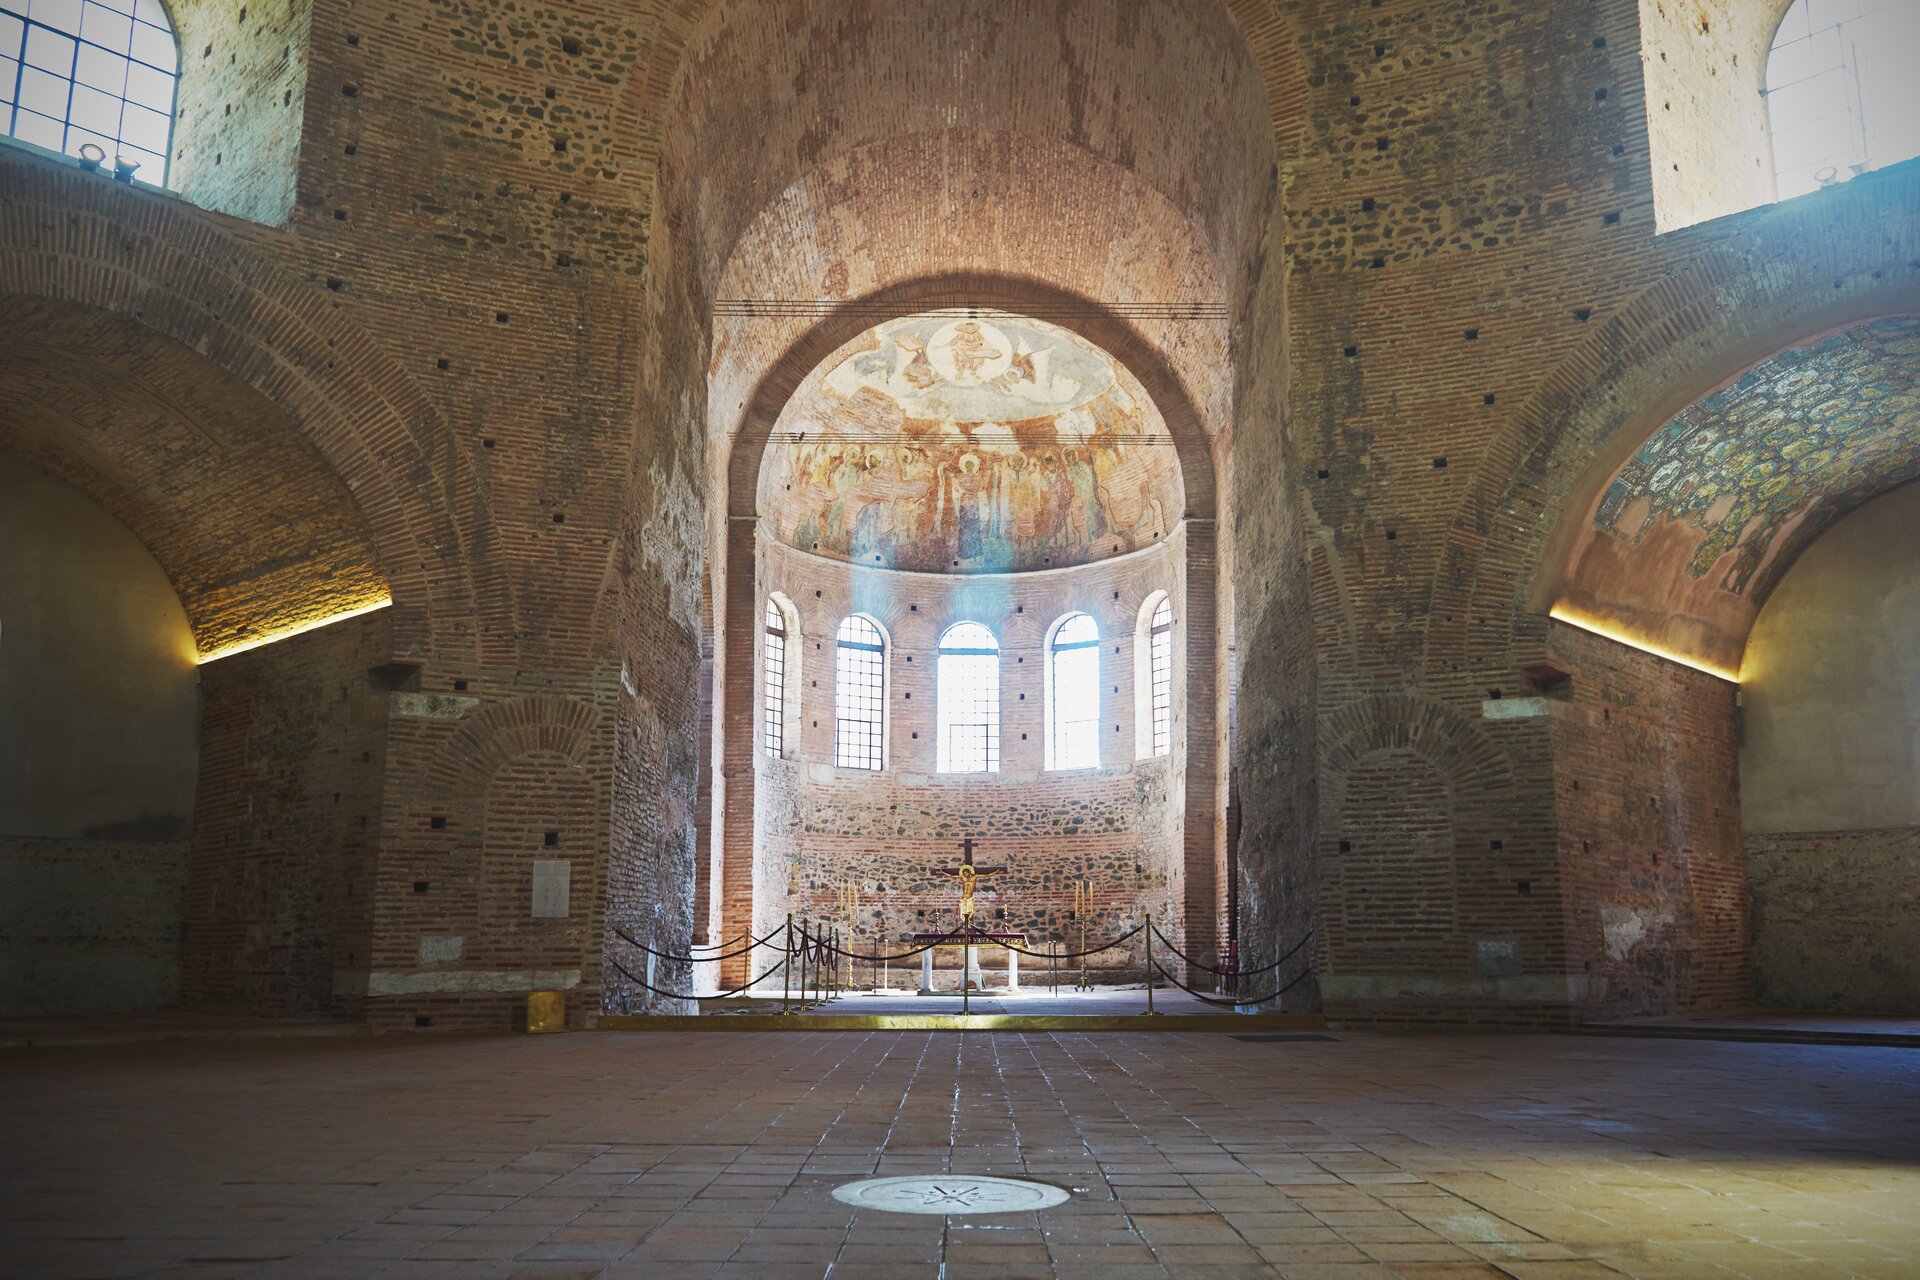 Ilustracja przedstawia wnętrze rotundy z IV wieku znanej jako kościół Agios Georgios. Budynek wykonano głównie z cegły i kamienia. W centralnej części znajduje się krzyż, zabezpieczony balustradą przed zwiedzającymi. Krzyż jest umieszczony we wnęce, części rotundy zwanej apsydą, z pięcioma wysokimi oknami, zwieńczonej półkolistym sklepieniem. Po lewej i prawej stronie znajdują się niższe sklepienia zdobione mozaikami.